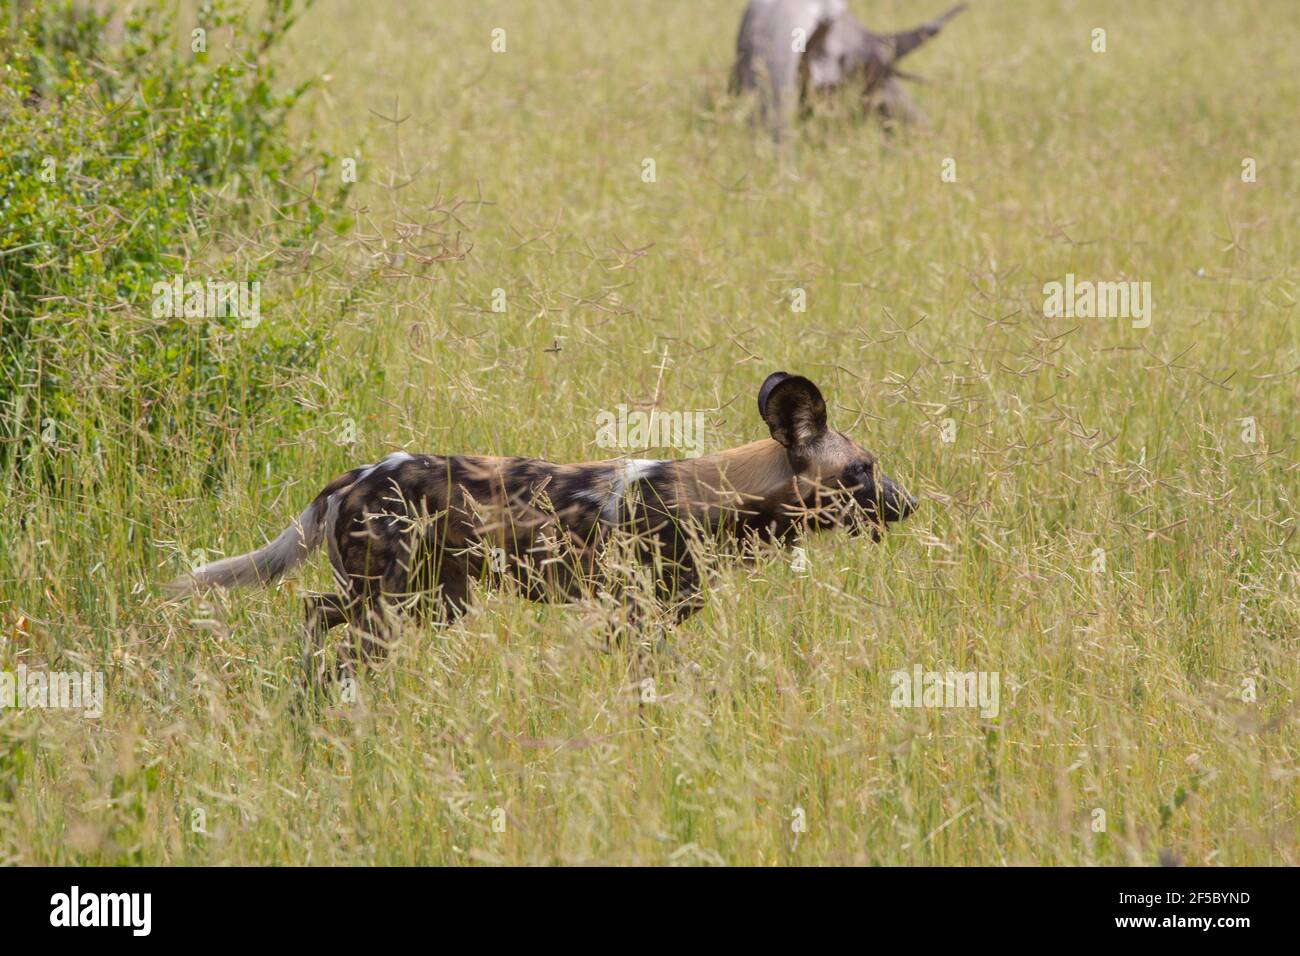 African Wild Hunting Dog oder Painted Wolf (Lycaon pictus). Erwachsener . Traben, Bewegung in einem gewissen Tempo Reisen durch Grasland Savanne. Kryptisches Fell f Stockfoto